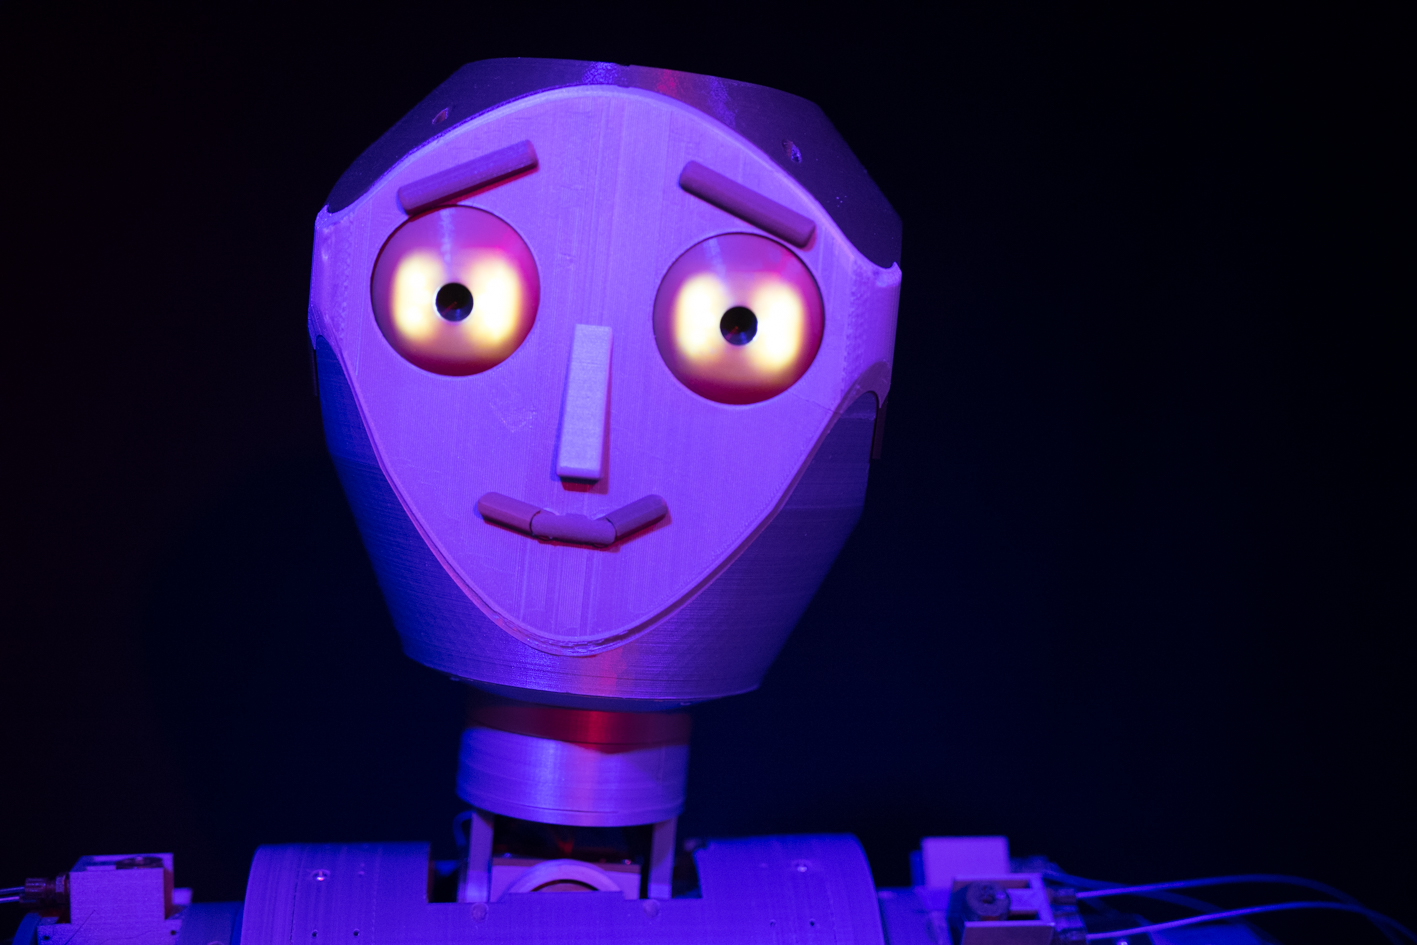 Gesicht von dem Roboter Roberry